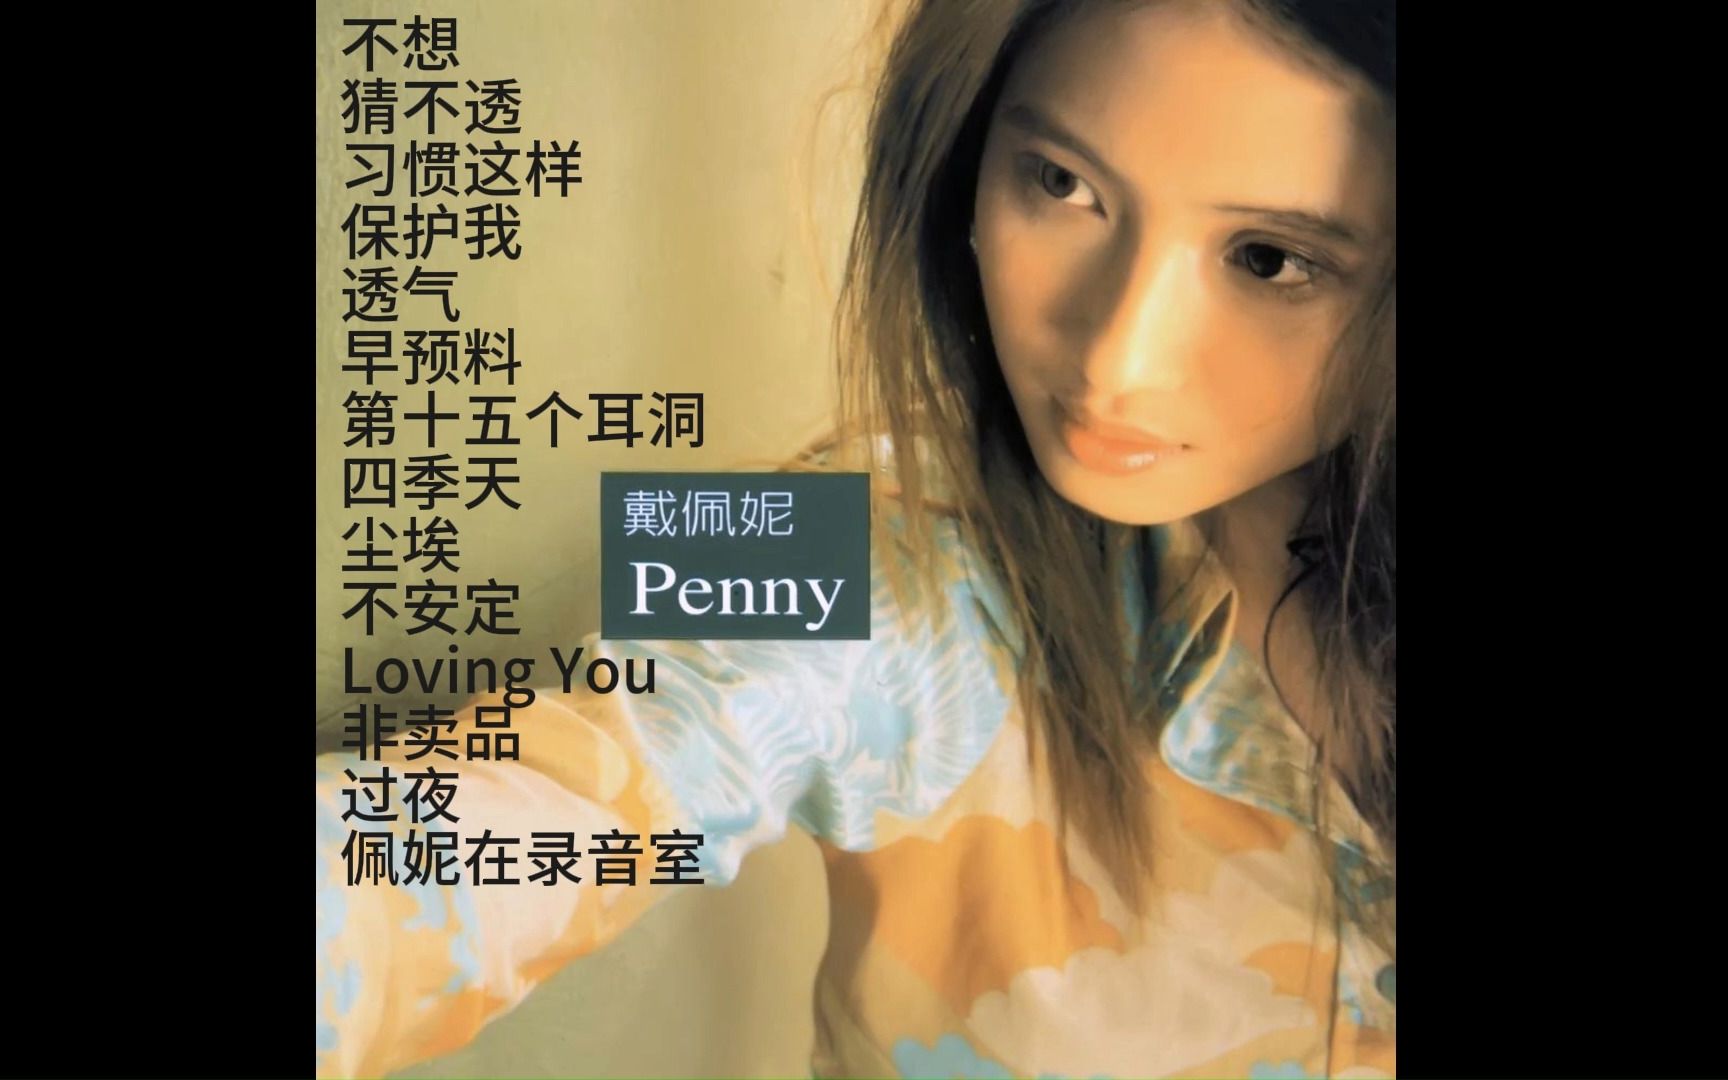 【戴佩妮】第一张专辑《penny》高音质畅听